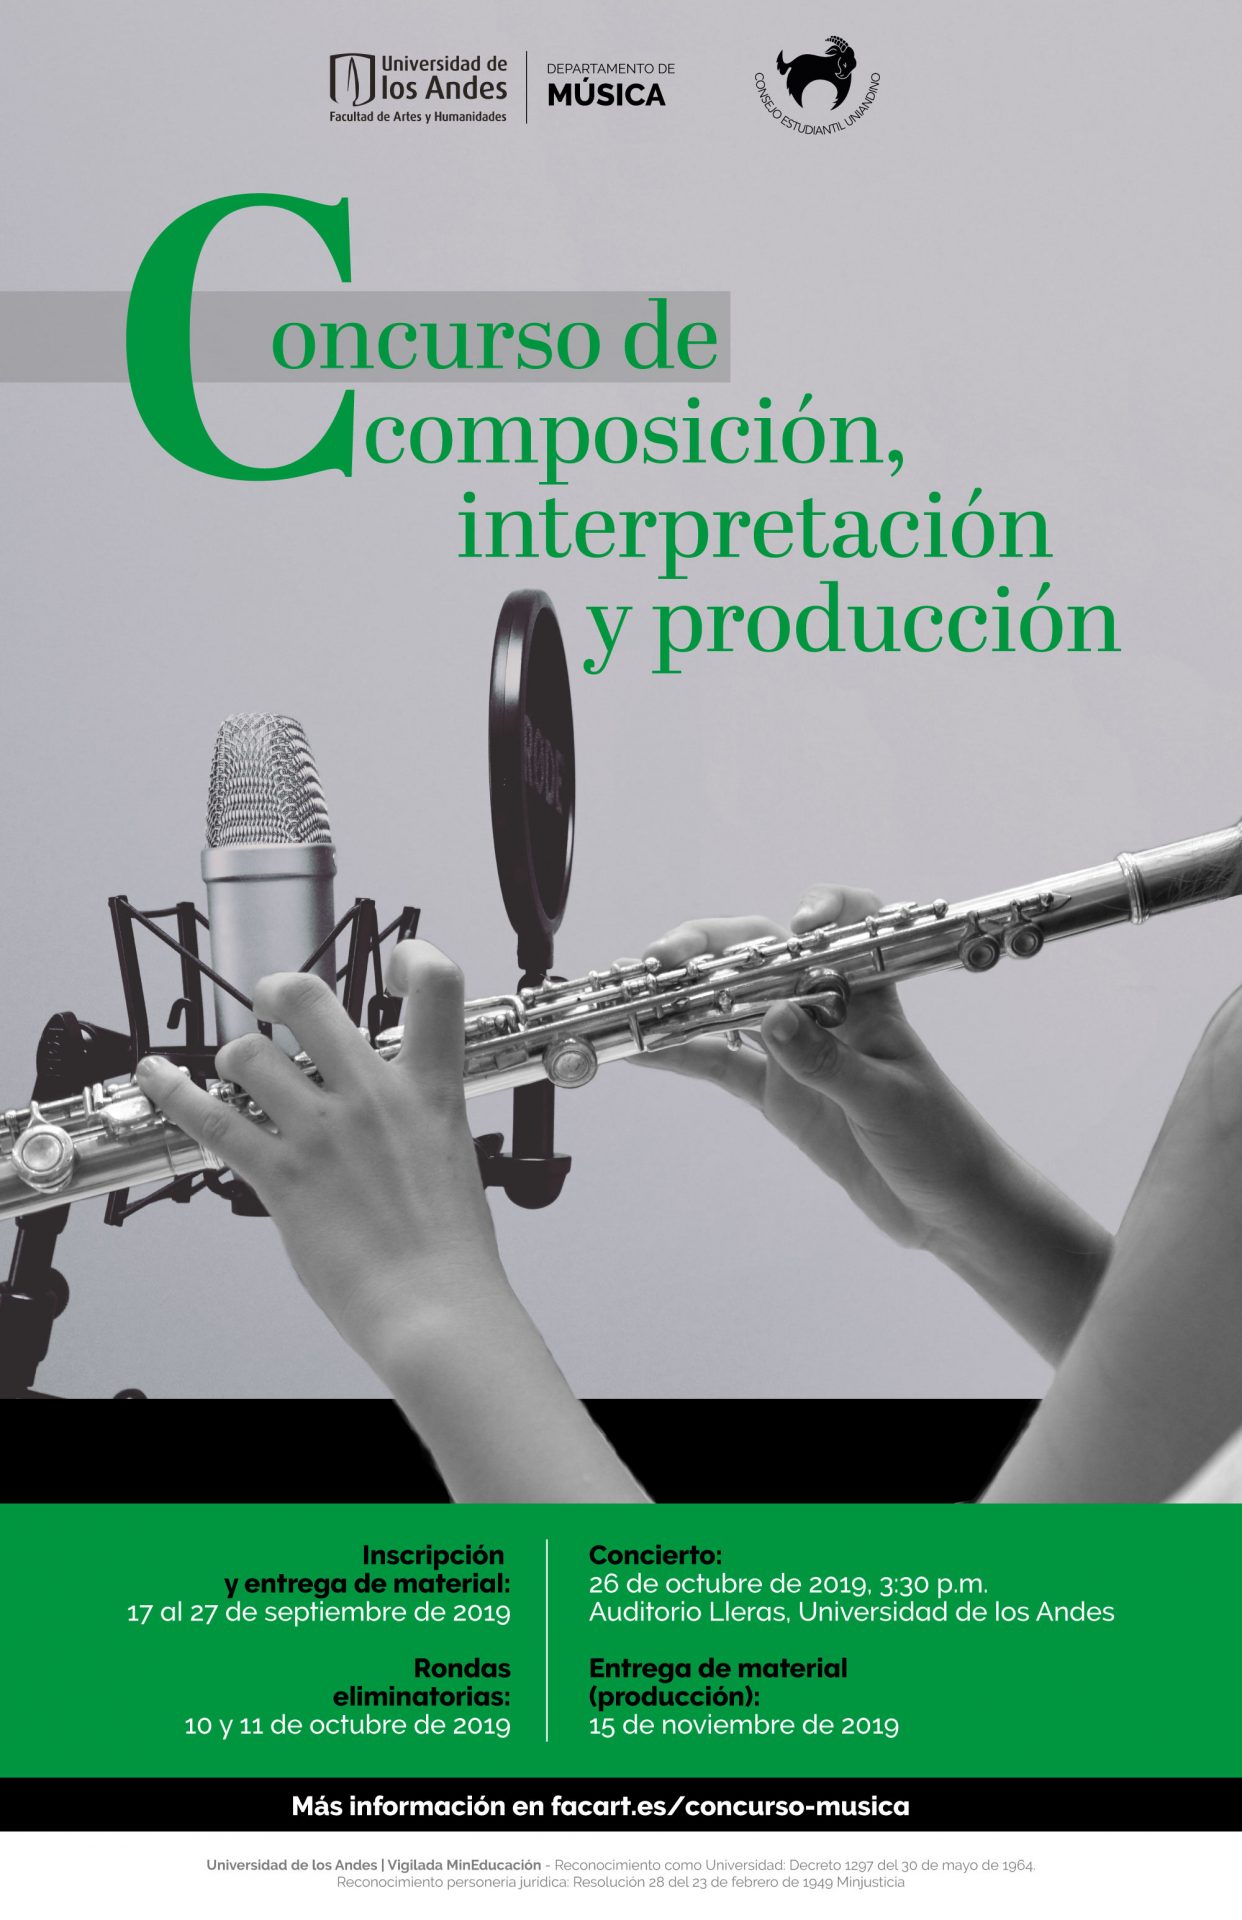 Concierto del Concurso de composición, interpretación y producción